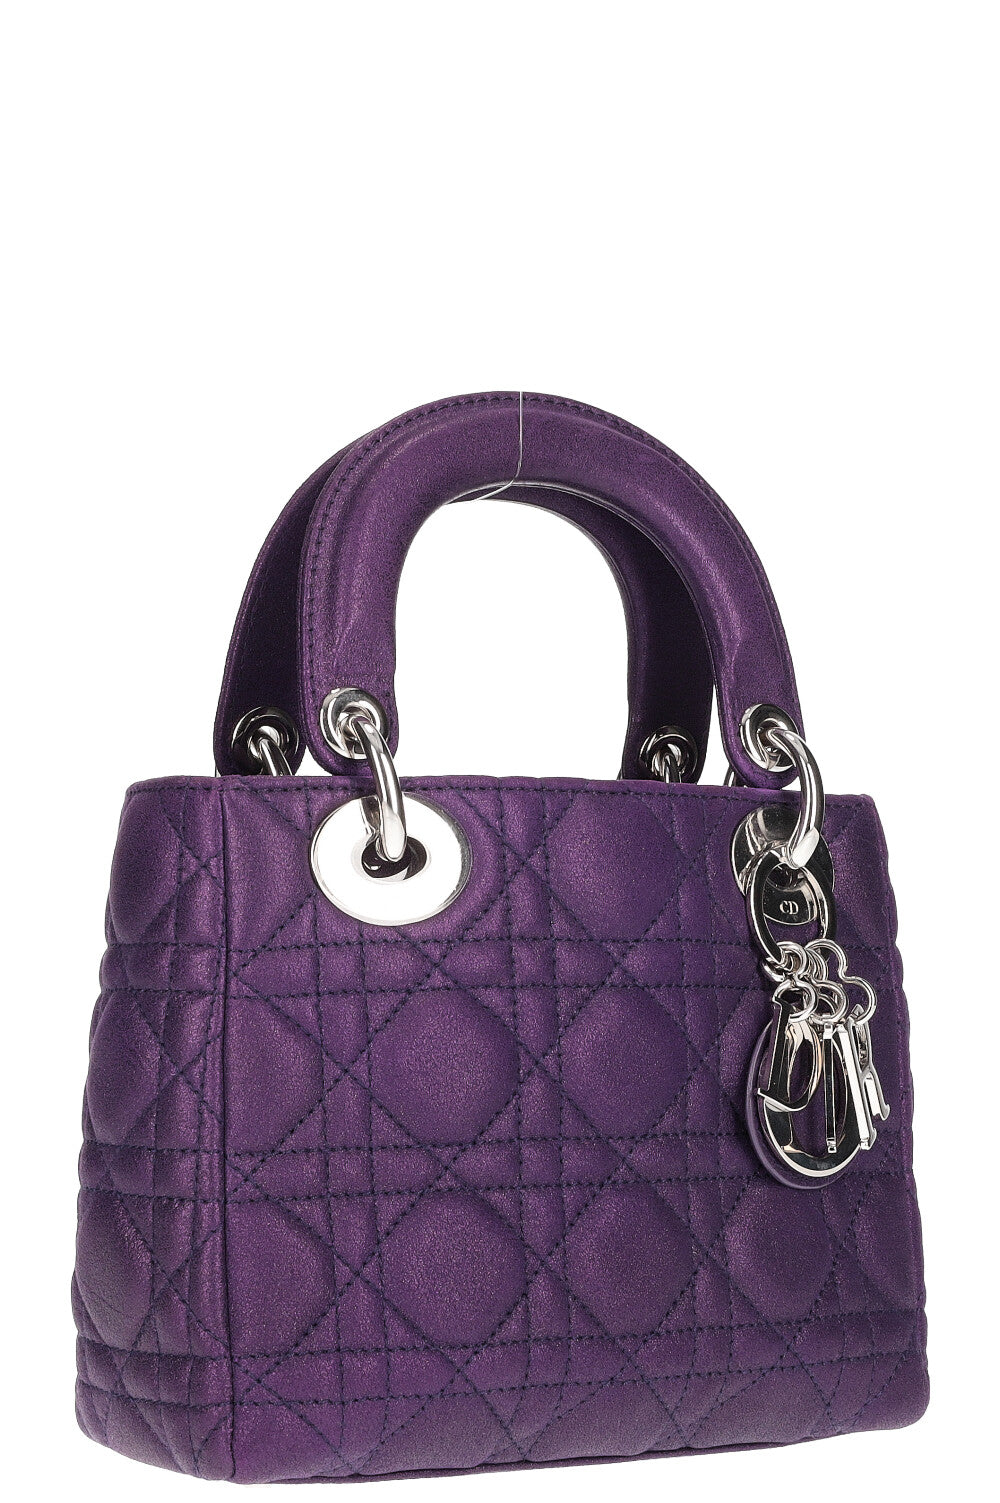 Dior Lady Dior Handbag 371176  Collector Square